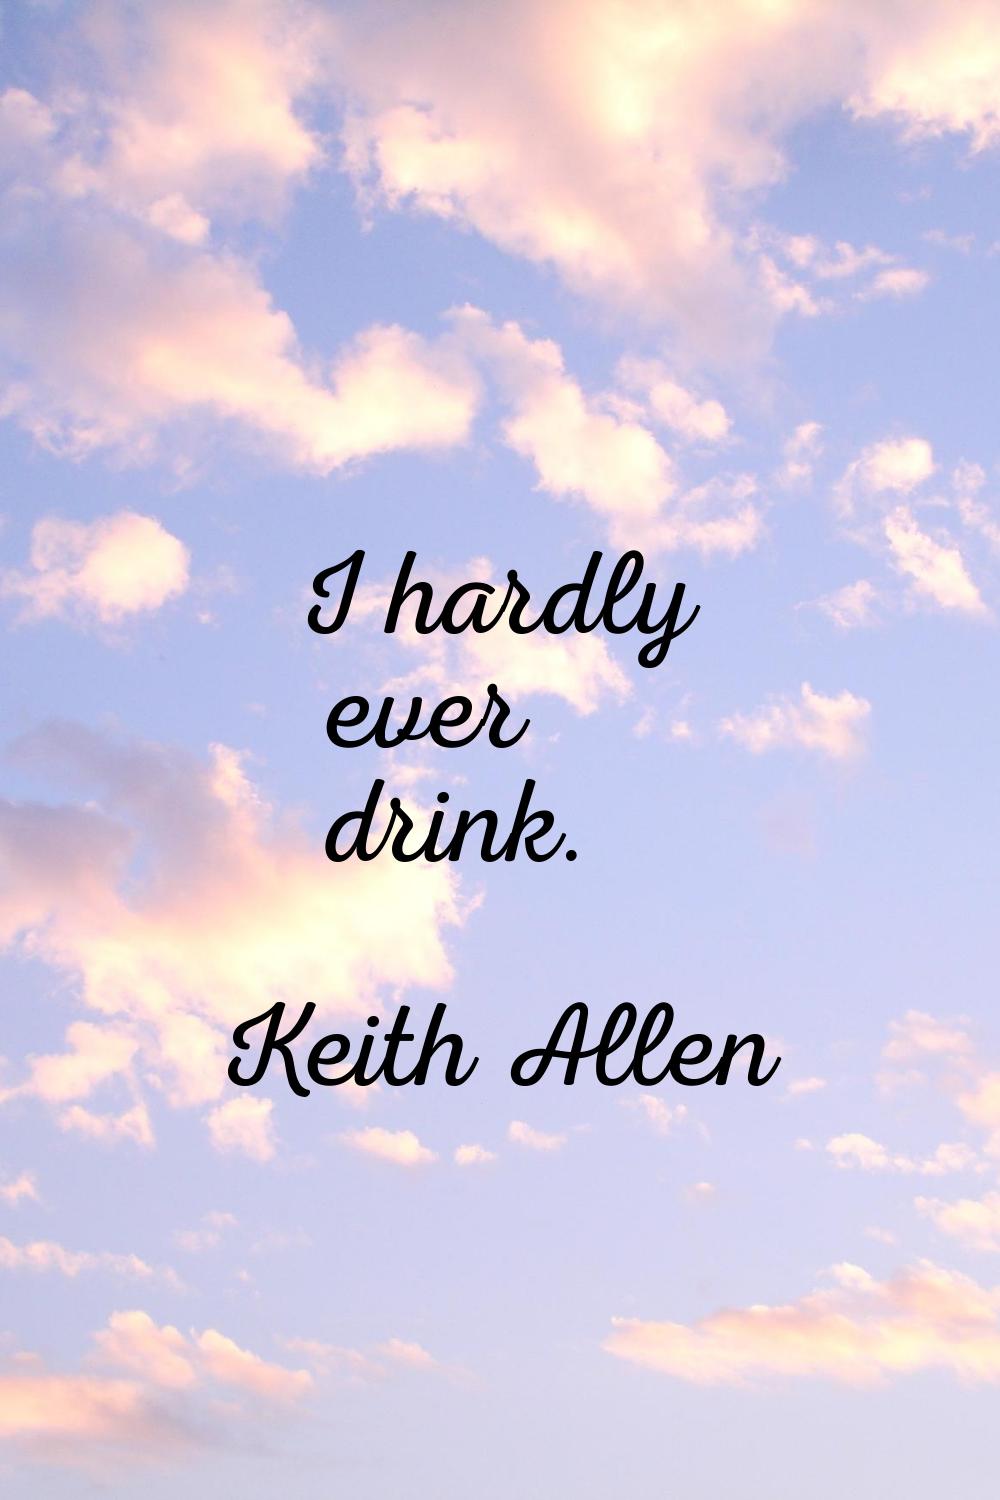 I hardly ever drink.